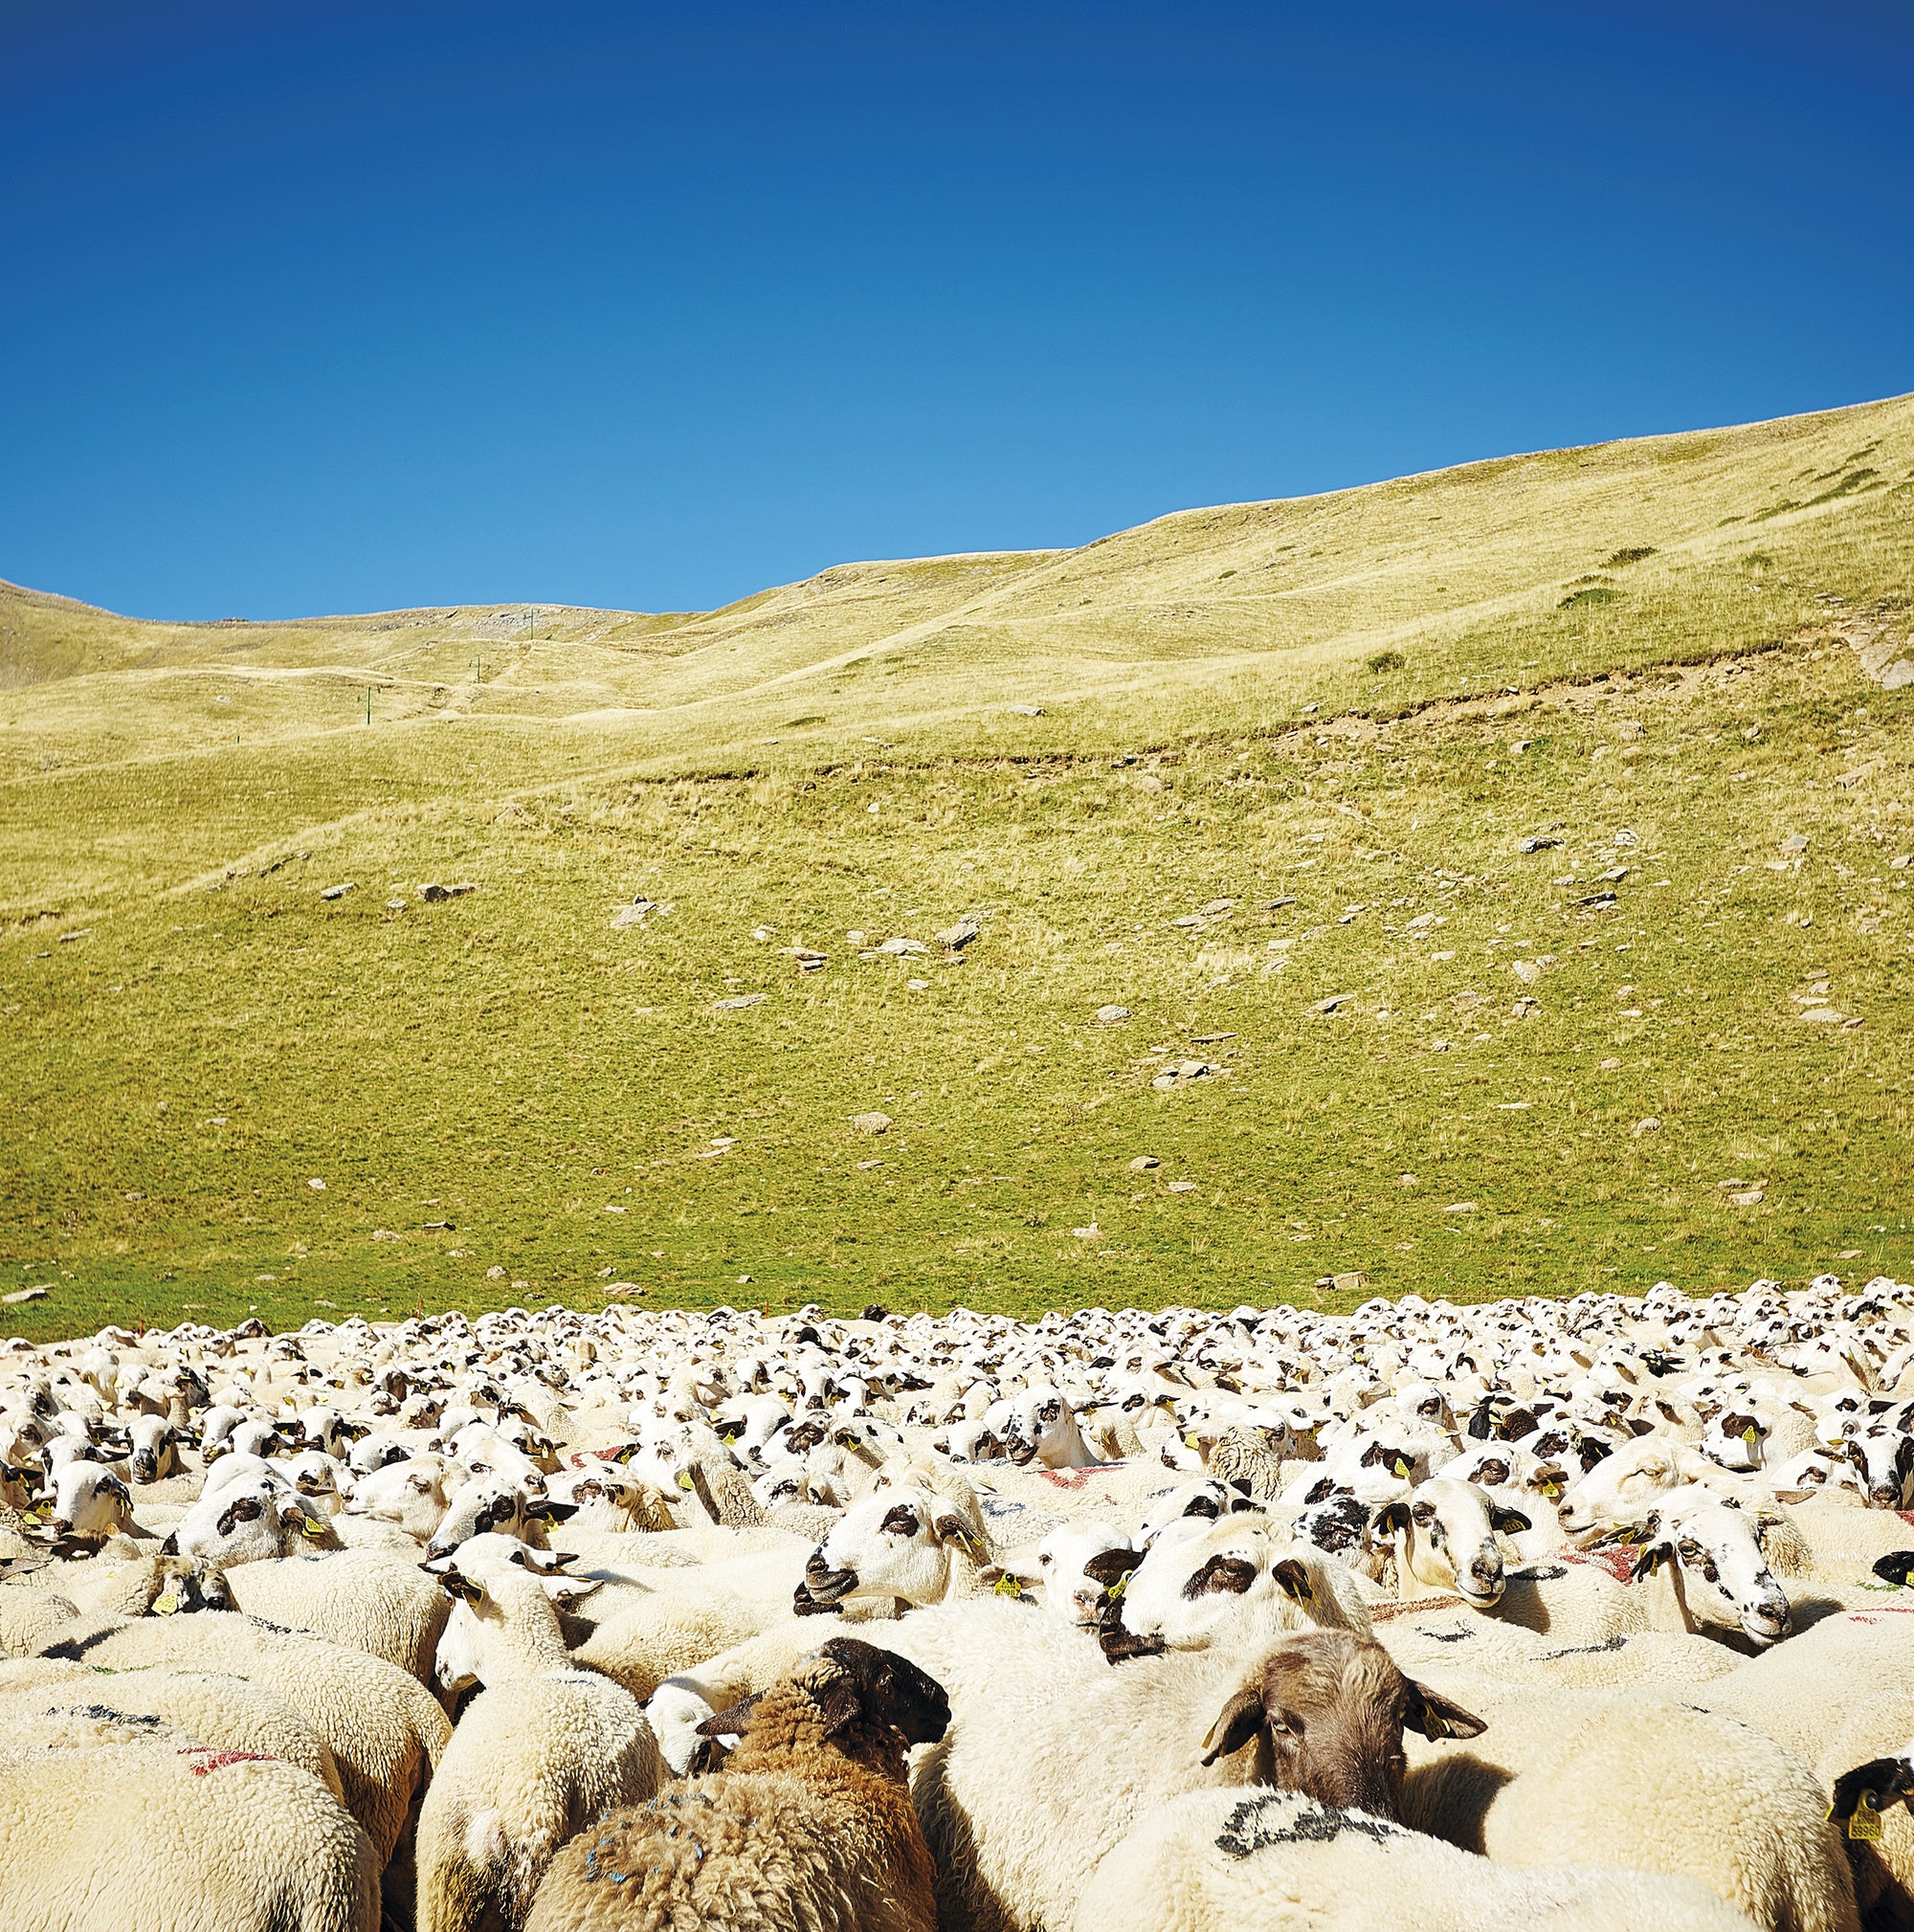 Schafe auf der Weide - Bei der Auswahl der Rohstoffe sind wir besonders kritisch und achtsam. Besonders bei Merionowolle ist das keine Selbstverständlichkeit.